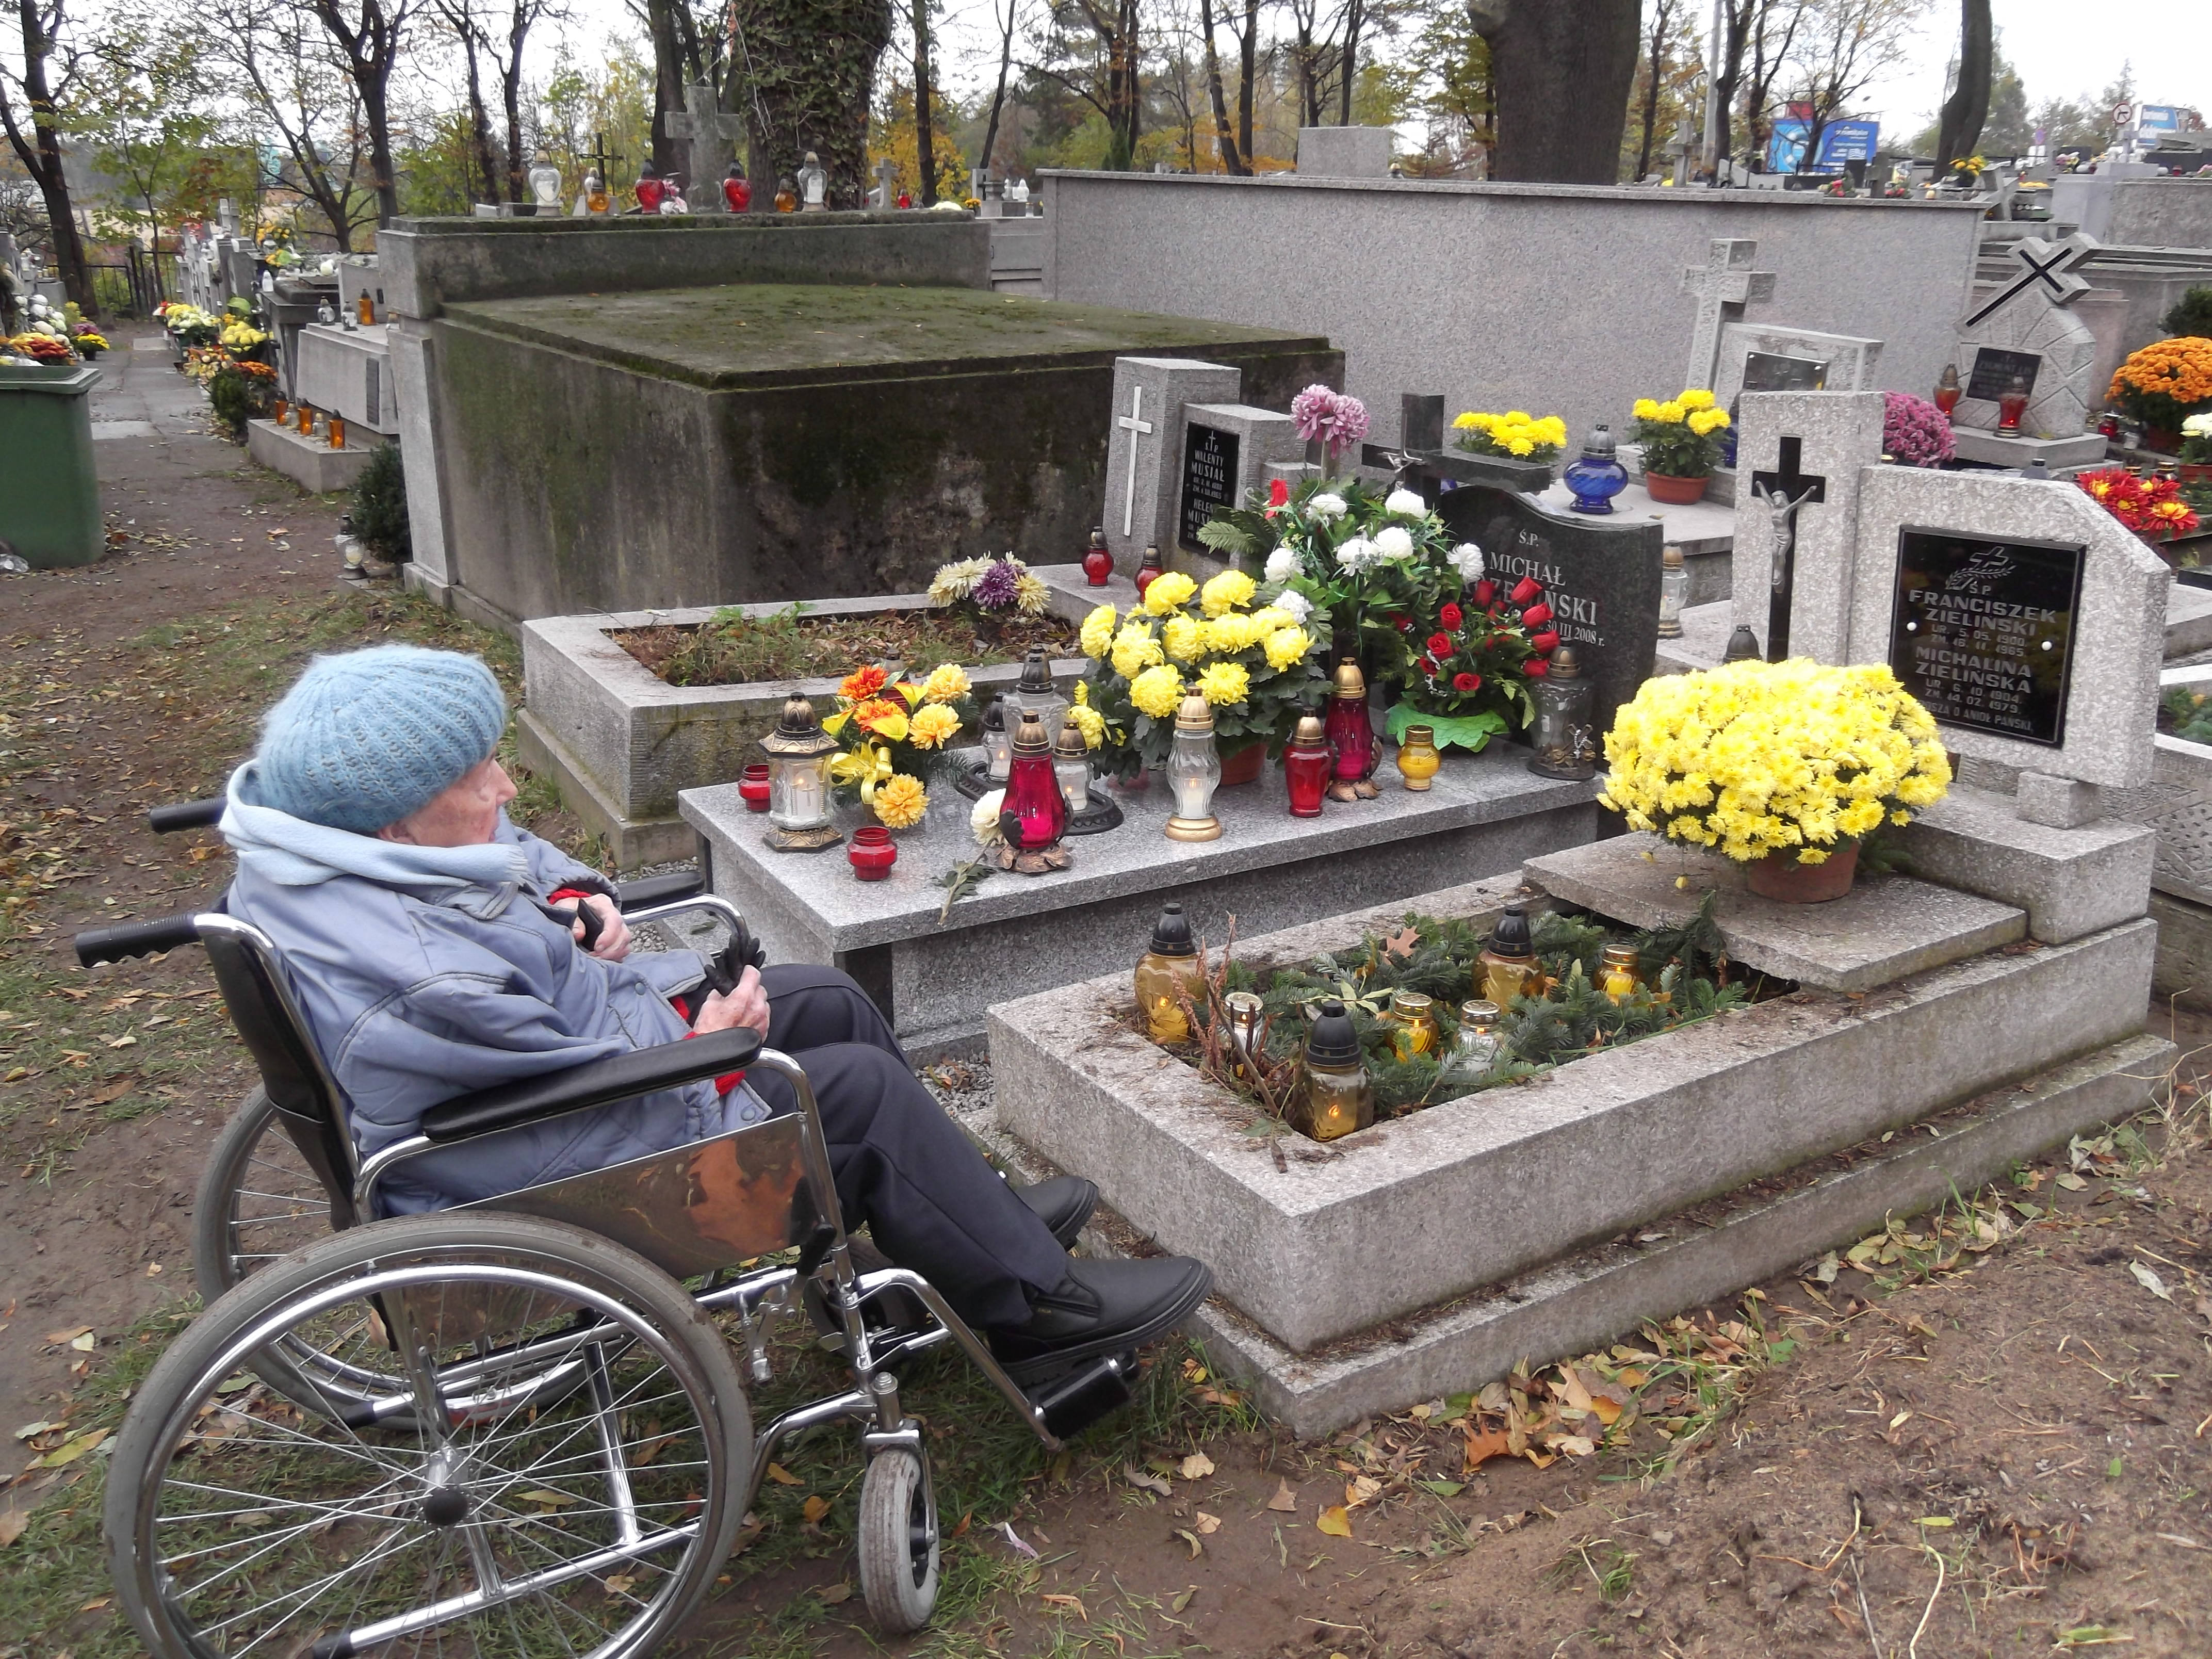 Seniorka na wózku siedzi przed grobem na cmentarzu